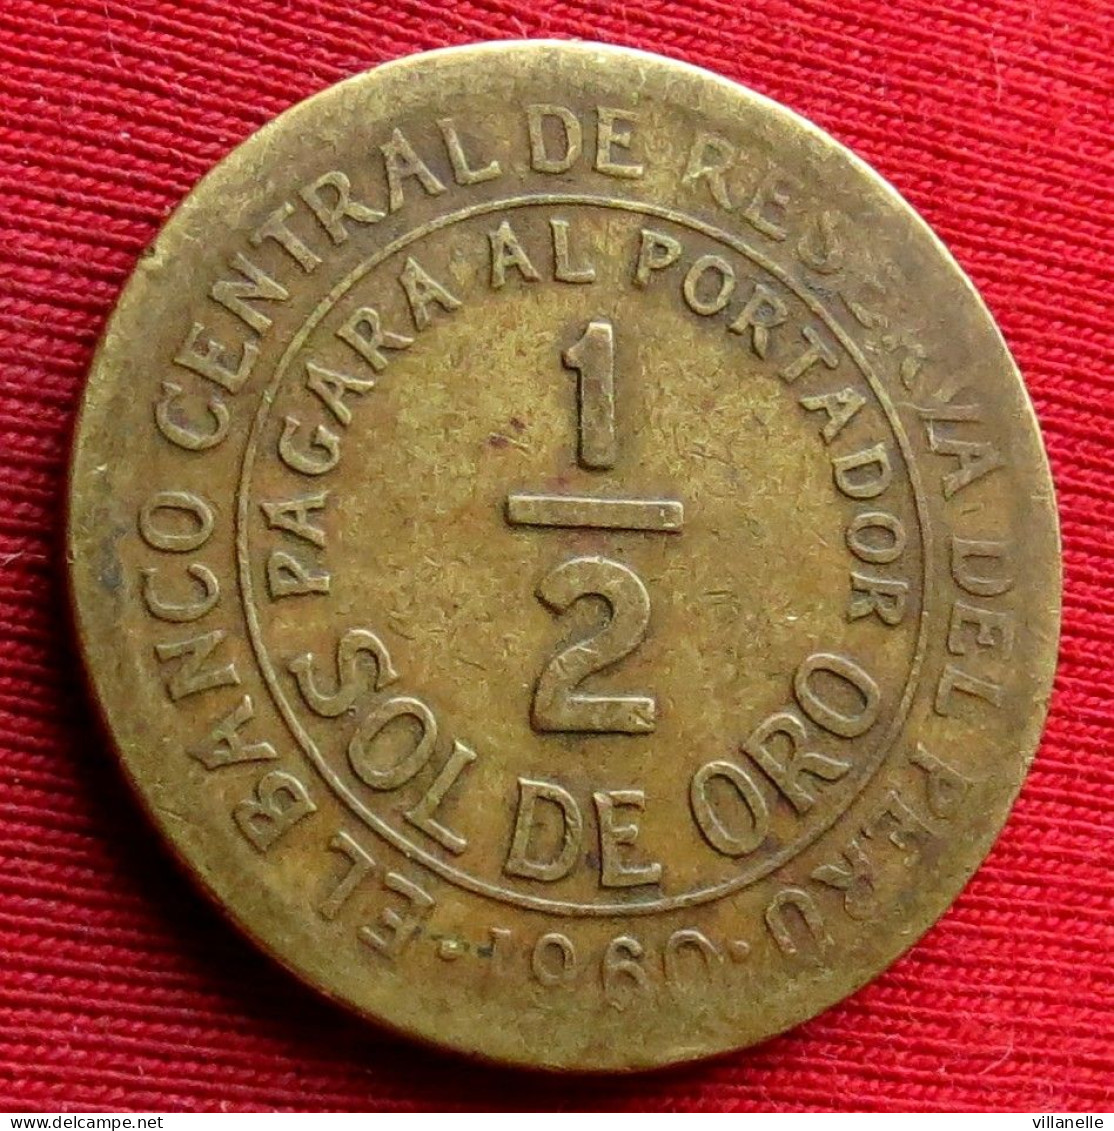 Peru 1/2 Half Sol De Oro 1960 Perou  W ºº - Perú